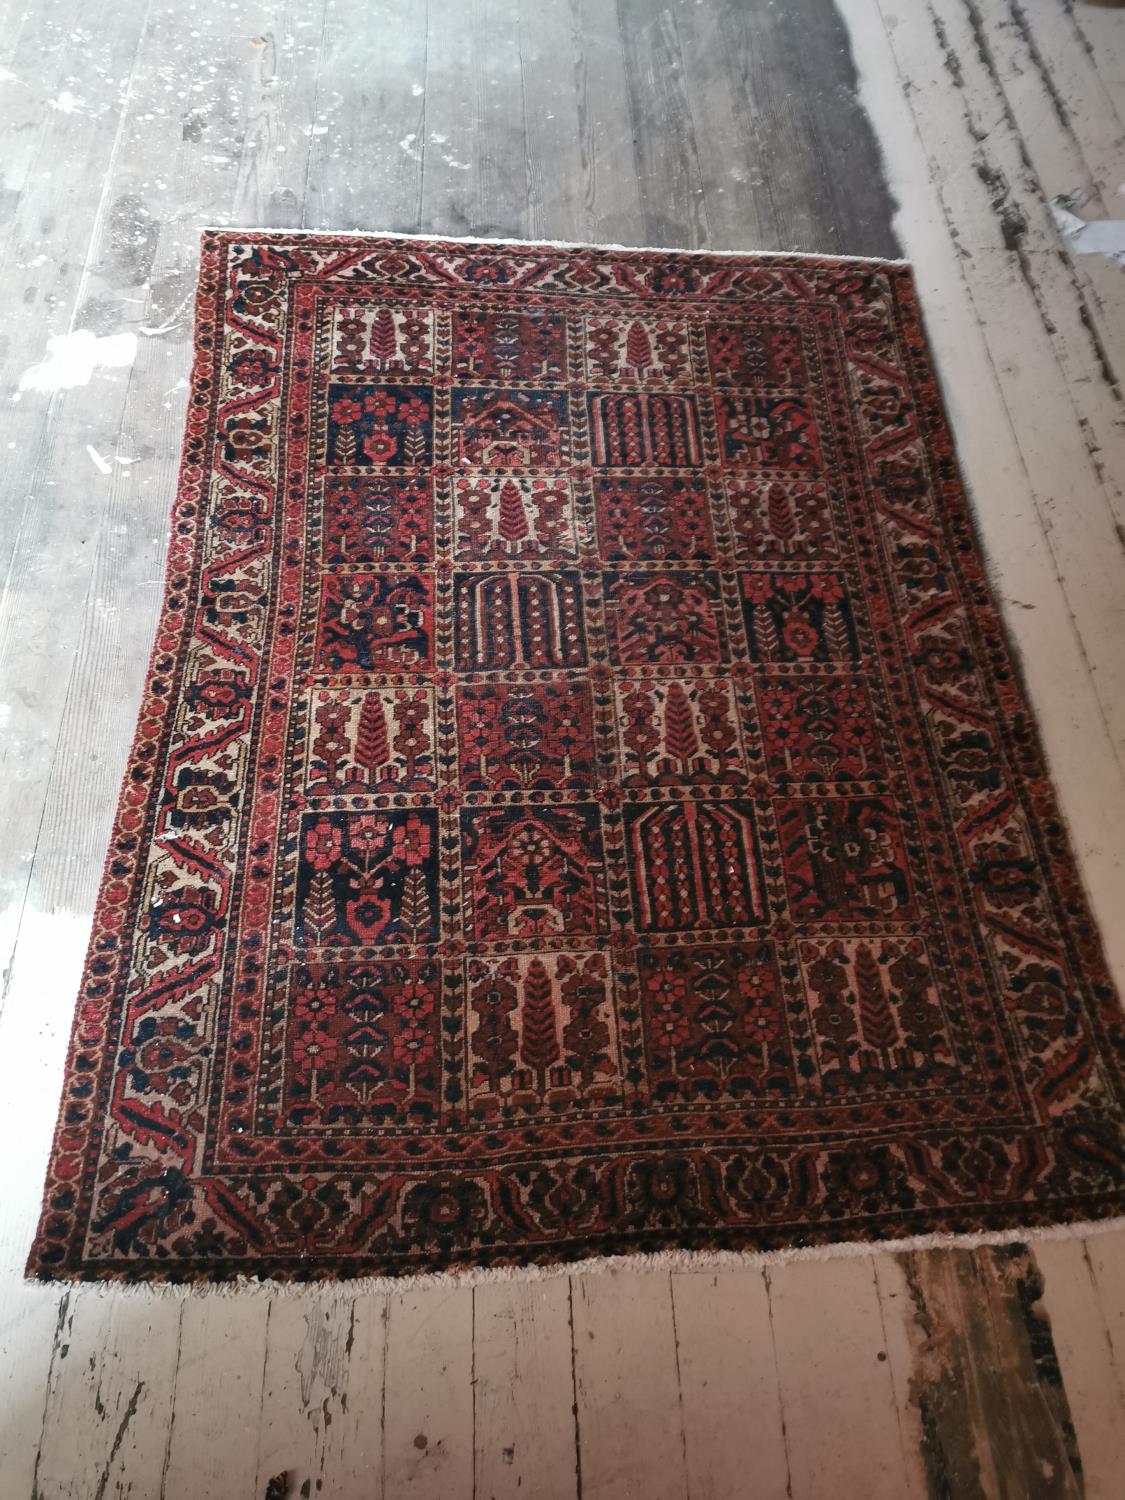 Decorative carpet sqaure {202 cm L x 149 cm W}.